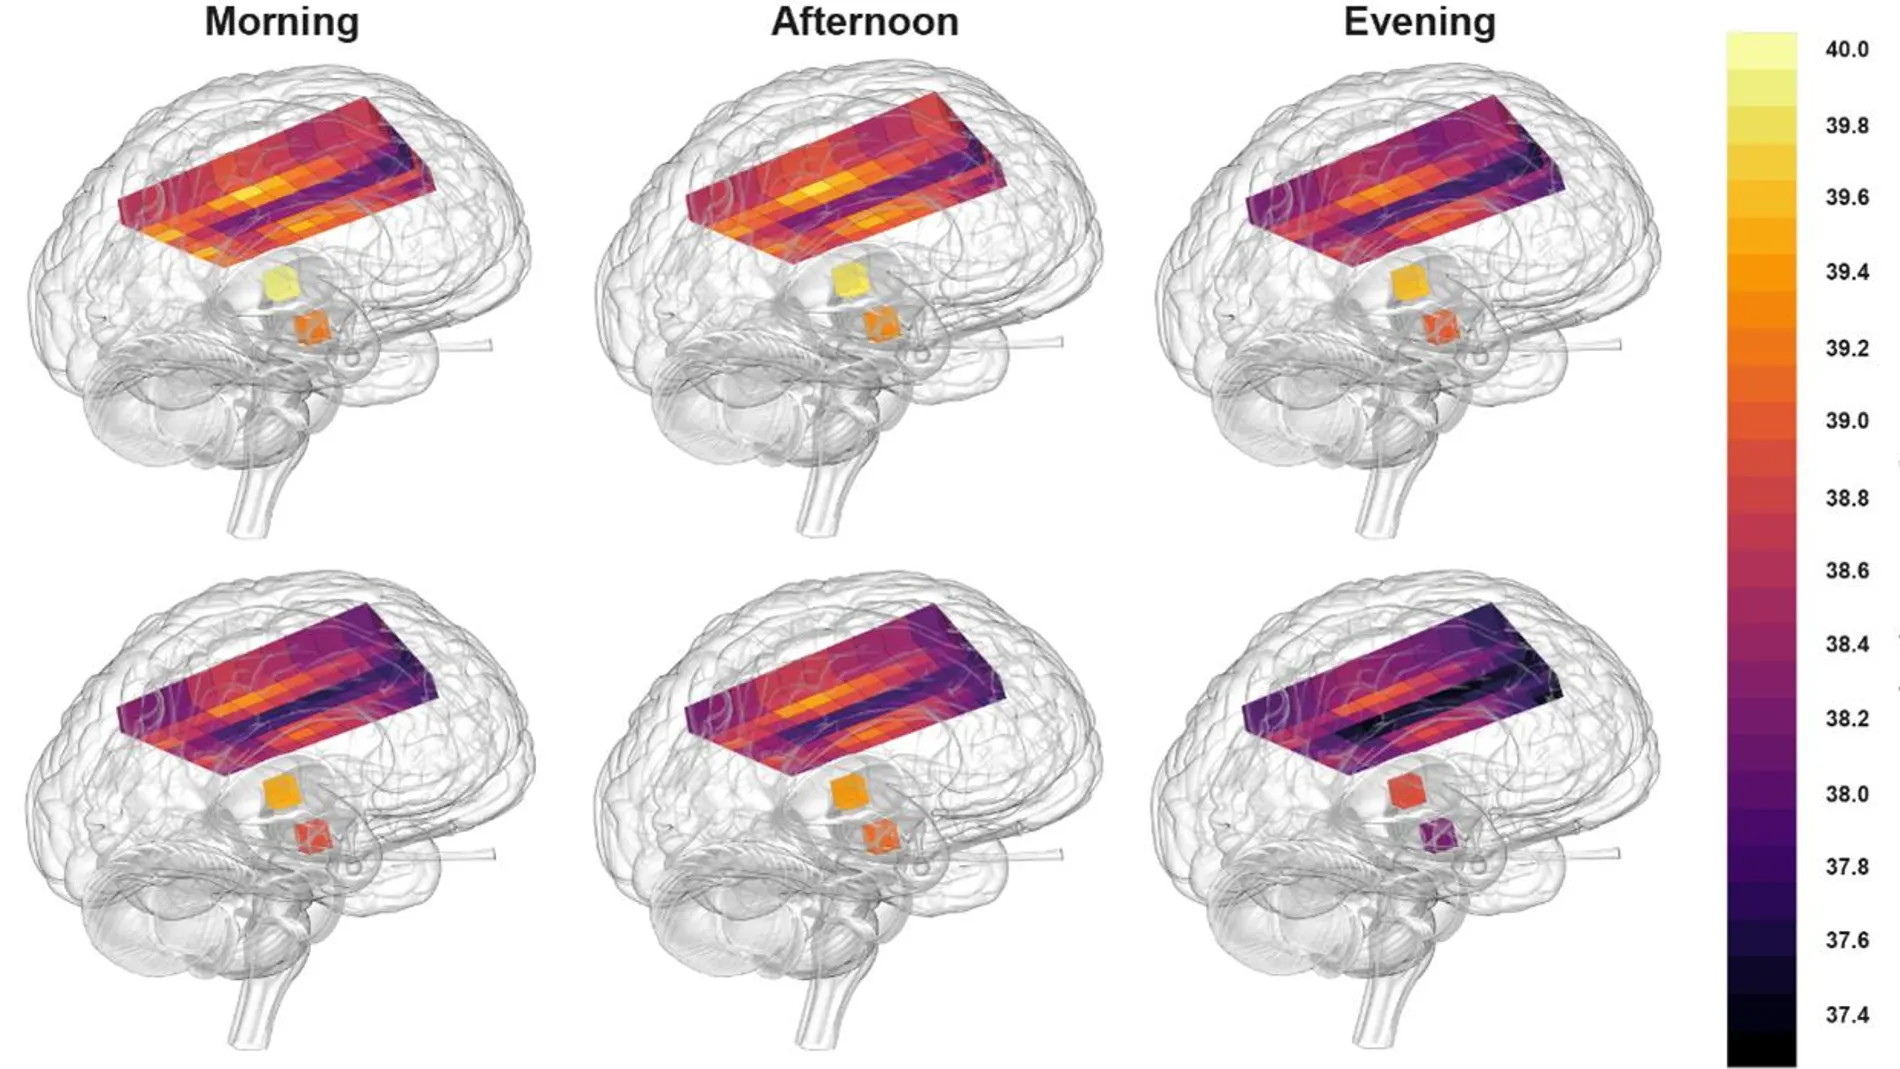 Resonancia magnética donde se muestran distintas temperaturas medidas en el cerebro de mujeres justo antes de ovular (arriba), hombres (abajo) y, por columnas de izquierda a derecha, en función de si fueron analizados por la mañana, por la tarde o ya al anochecer.